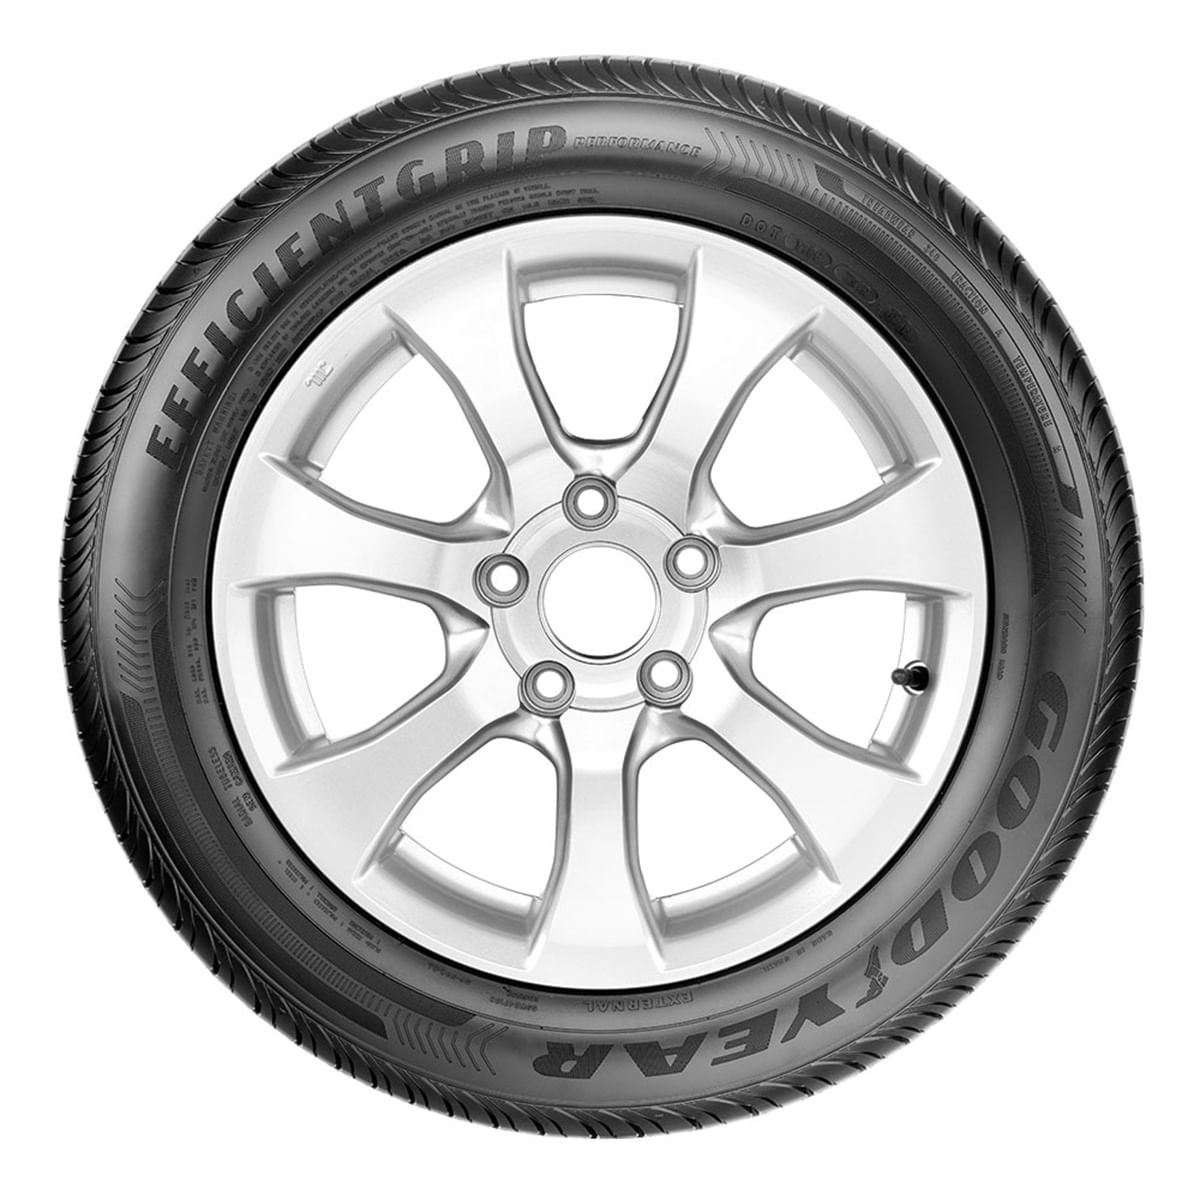 Goodyear revela pneu esférico em Genebra